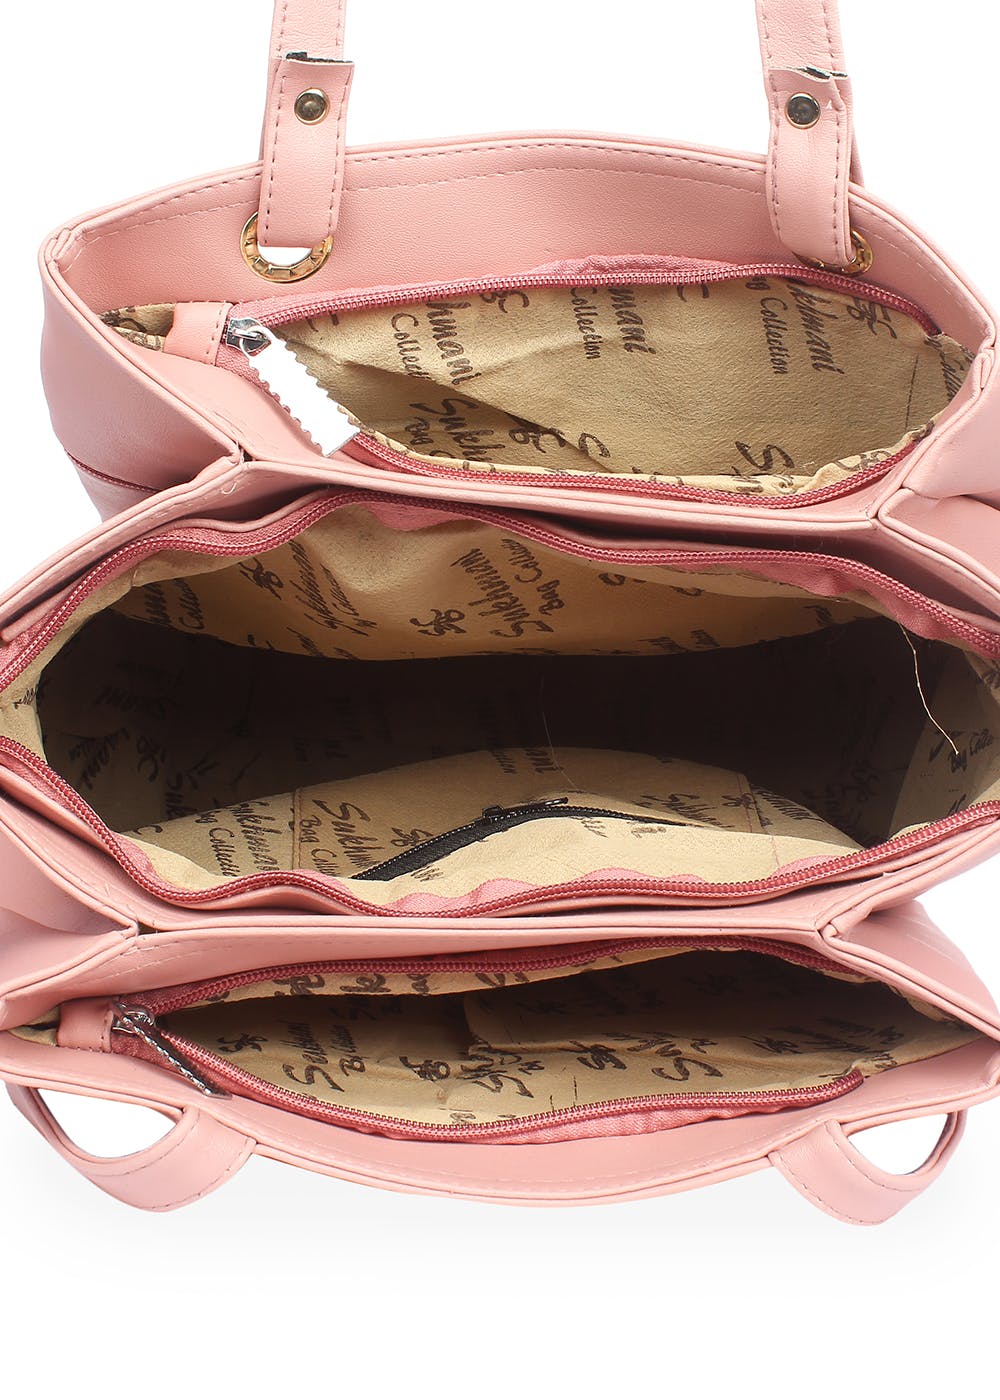 Woman Bag Small Shoulder Bag in Pvc 3 Shoulder Compartments Giulia